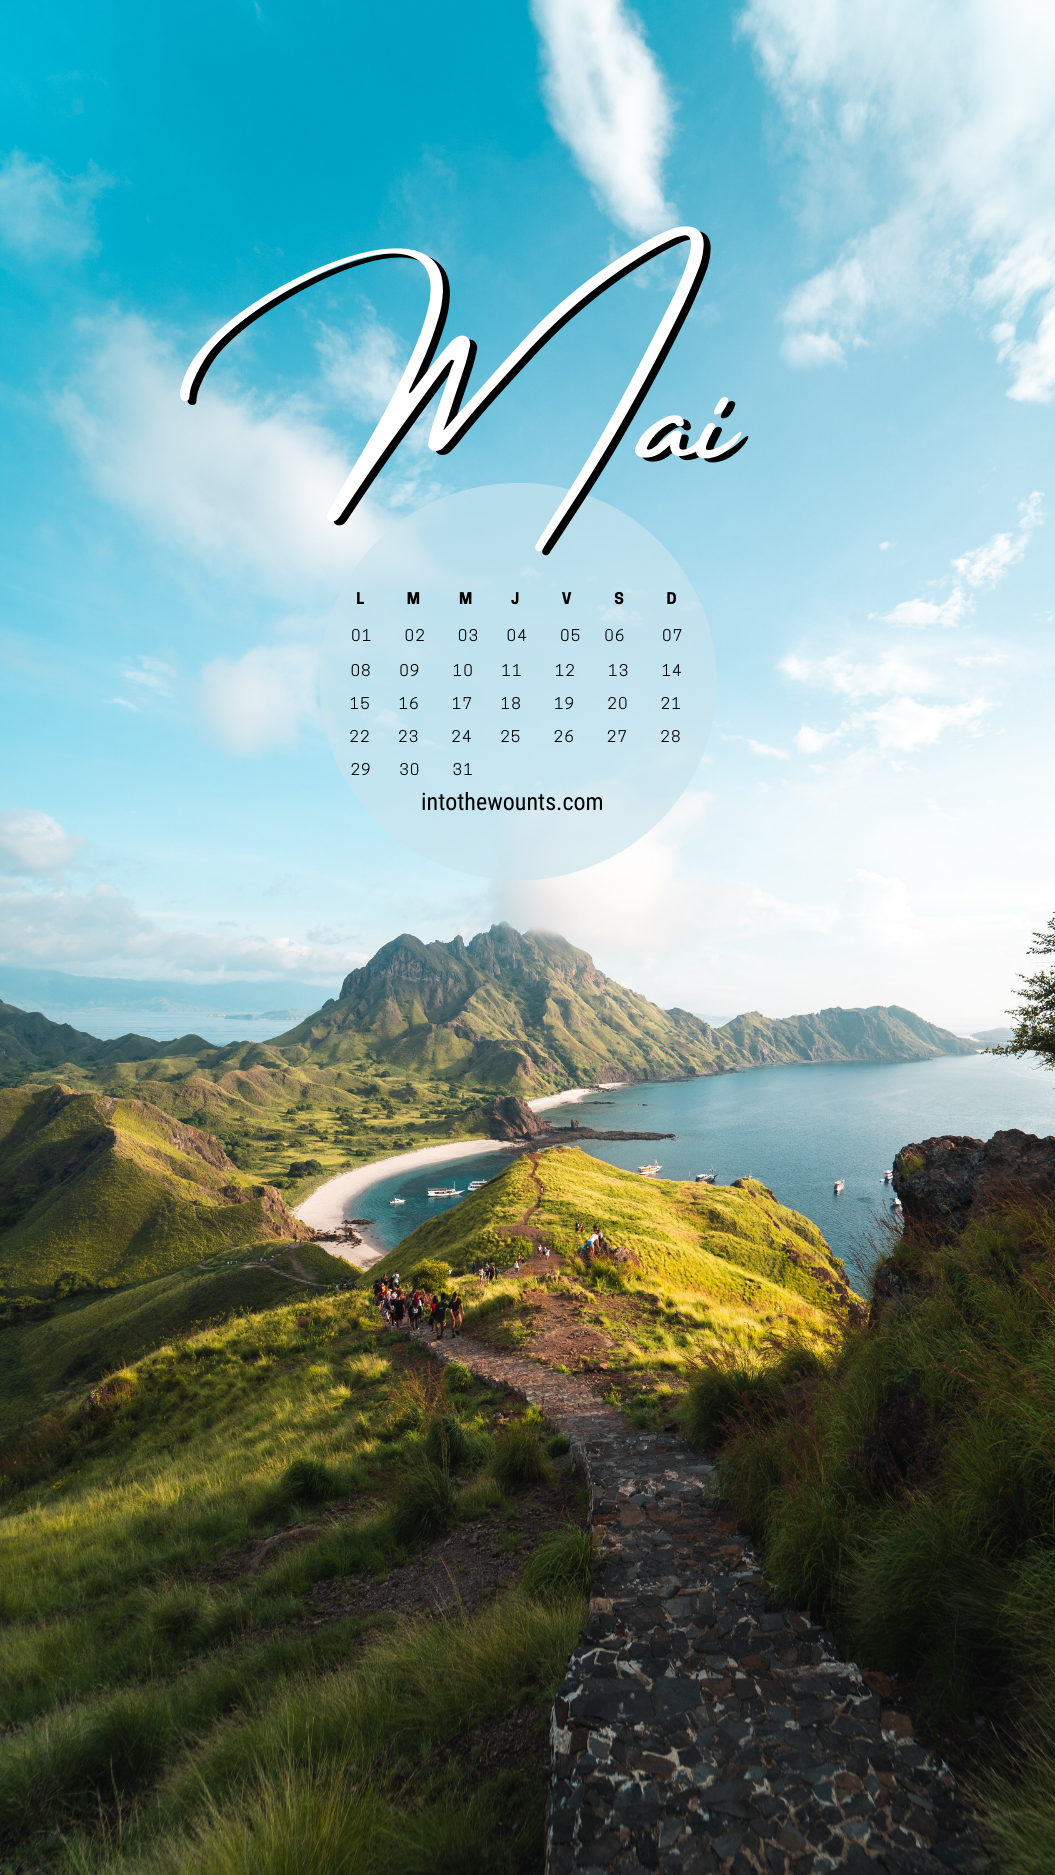 Fond d'écran du mois de mai 2023 avec calendrier. Thème montagnes, voyage, nature, vue panoramique.